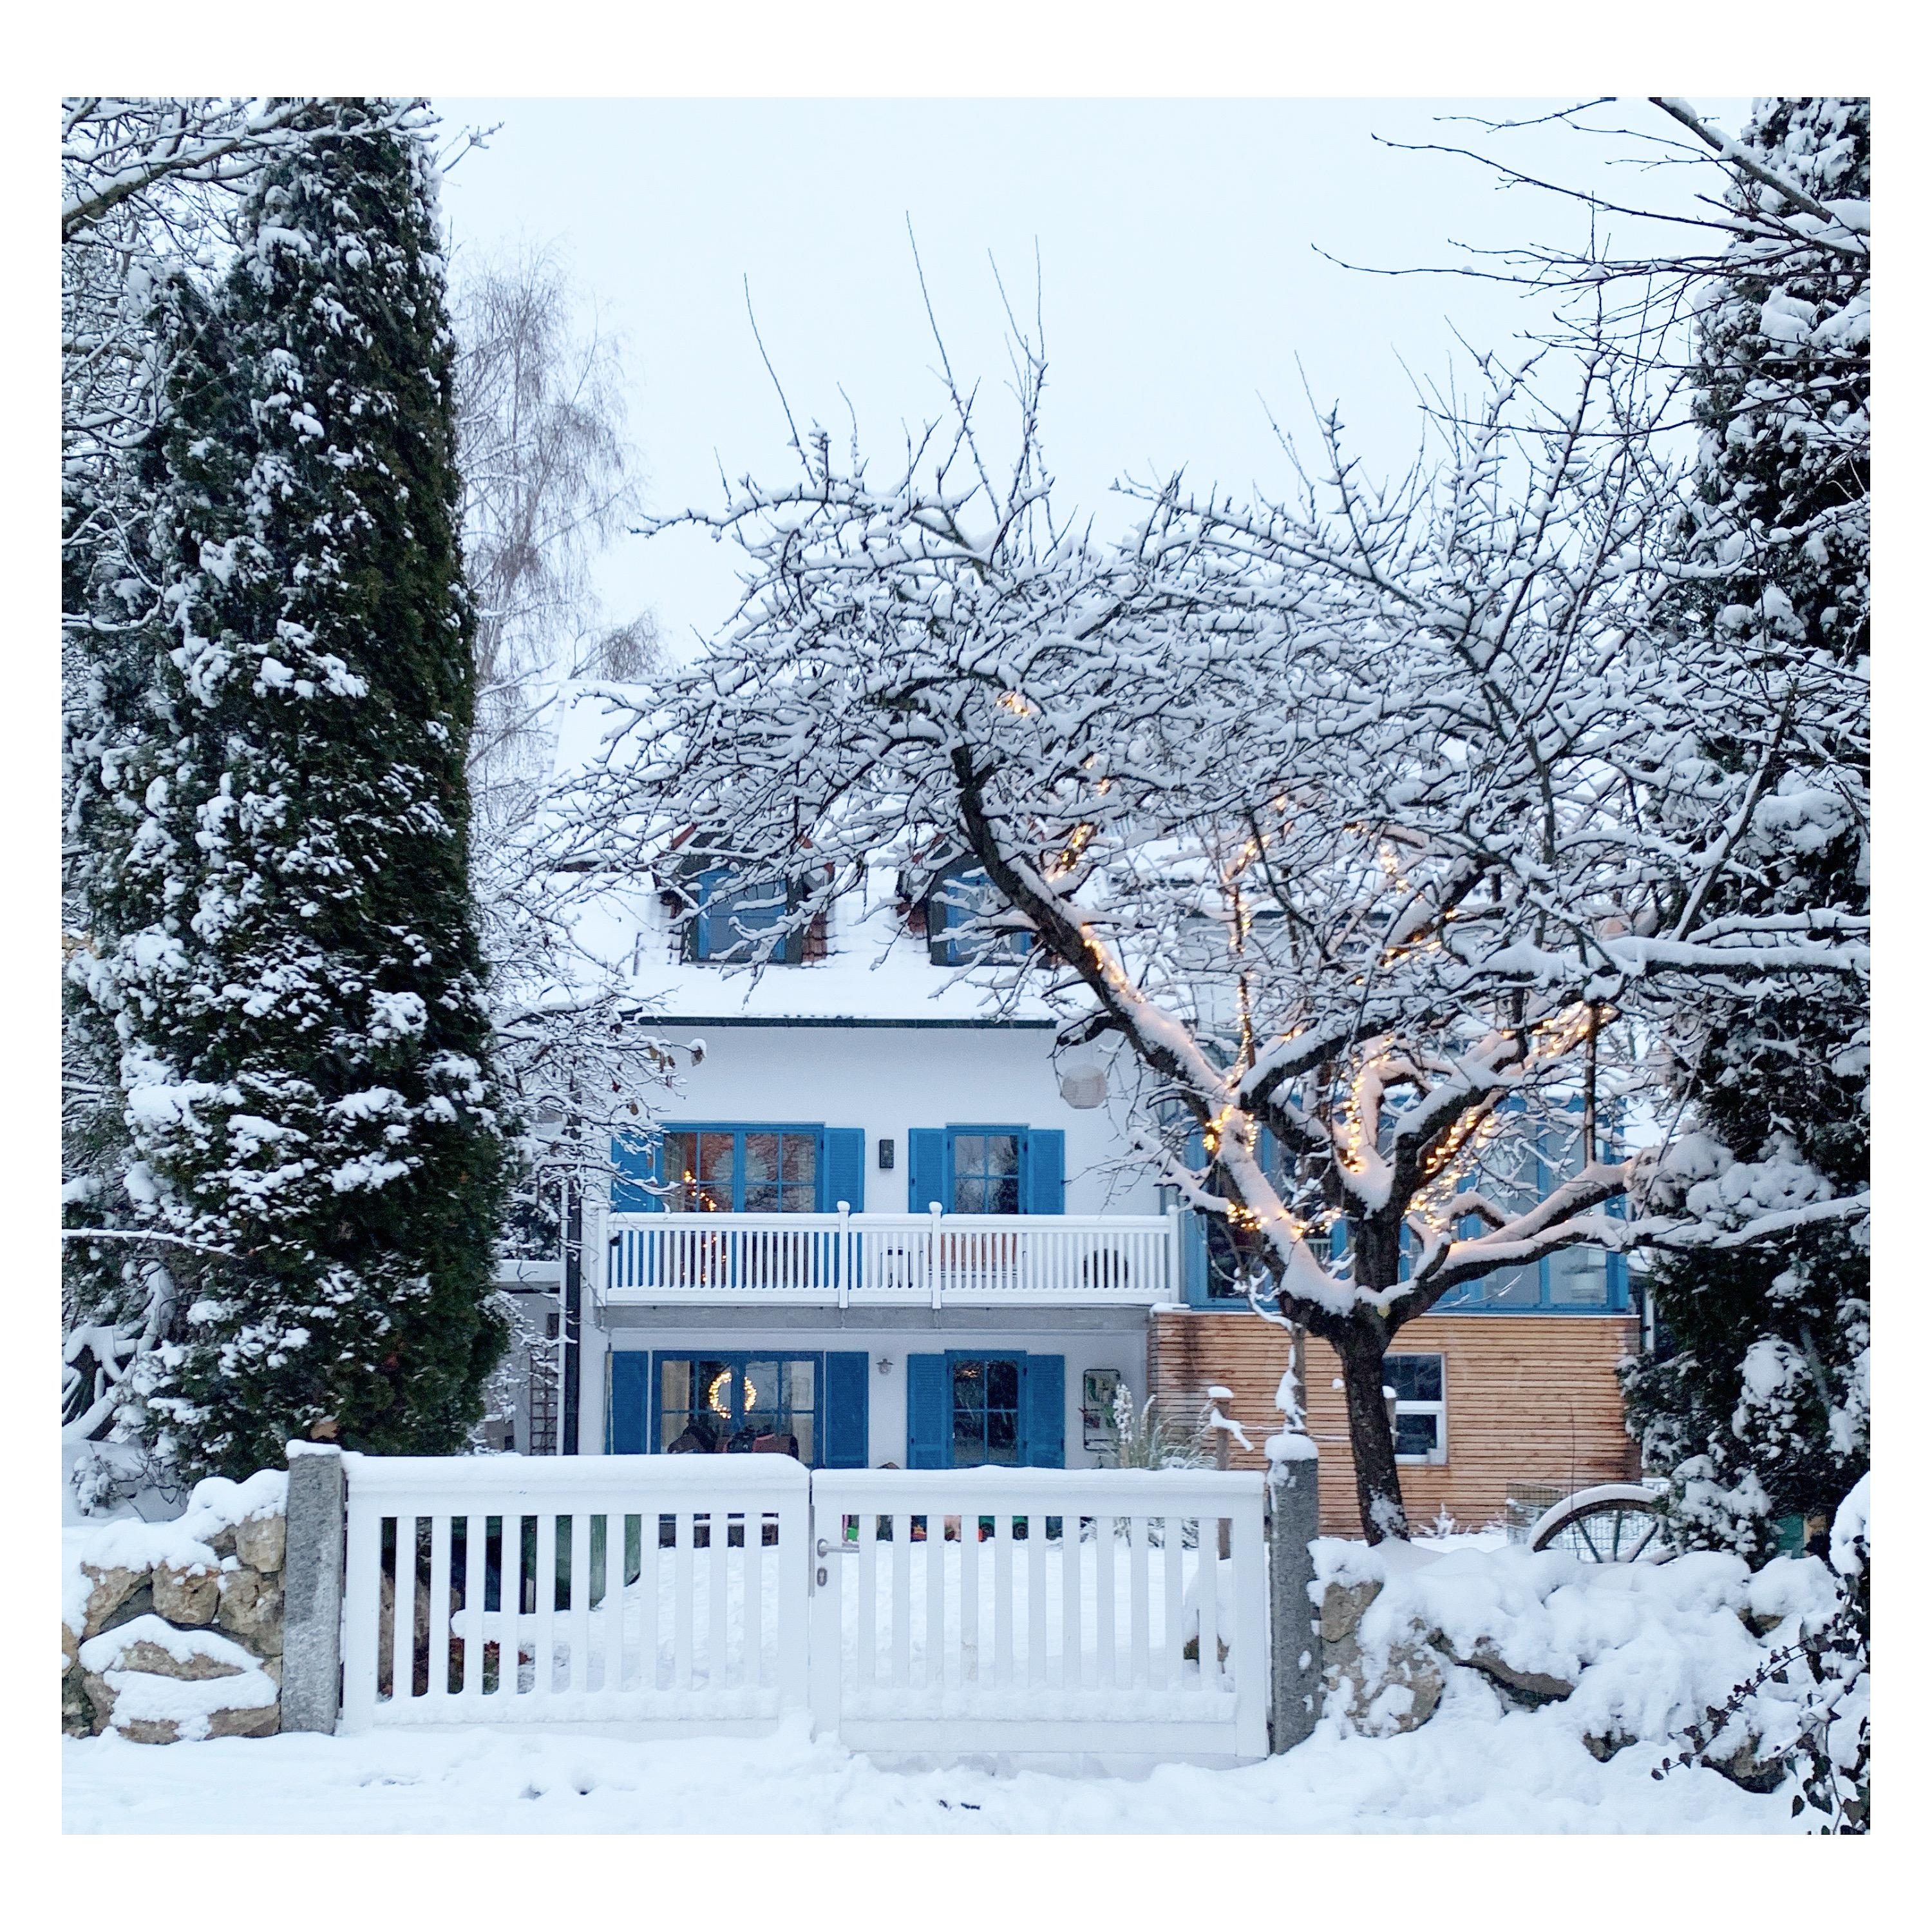 Mit ein bisschen Schnee sieht alles so friedlich aus!
#fassade #zuhause #schnee #garten